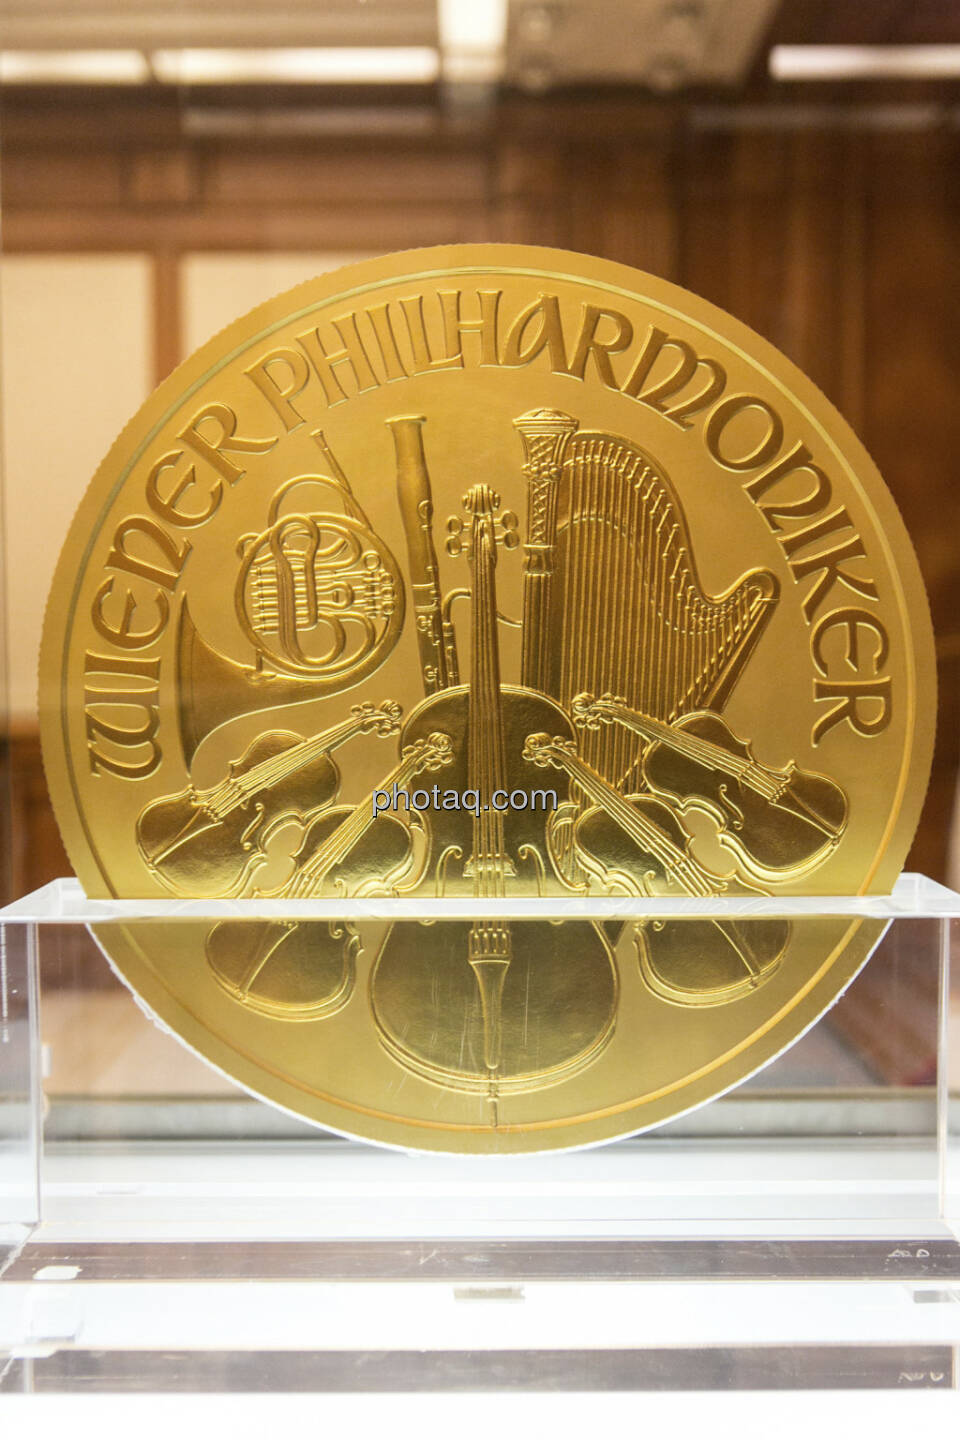 1000-Unzen-Münze Wiener Philharmoniker mit einem Nennwert von € 100.000,-- und einem Gewicht von 31,103 kg, Auflage: 15 Stück weltweit